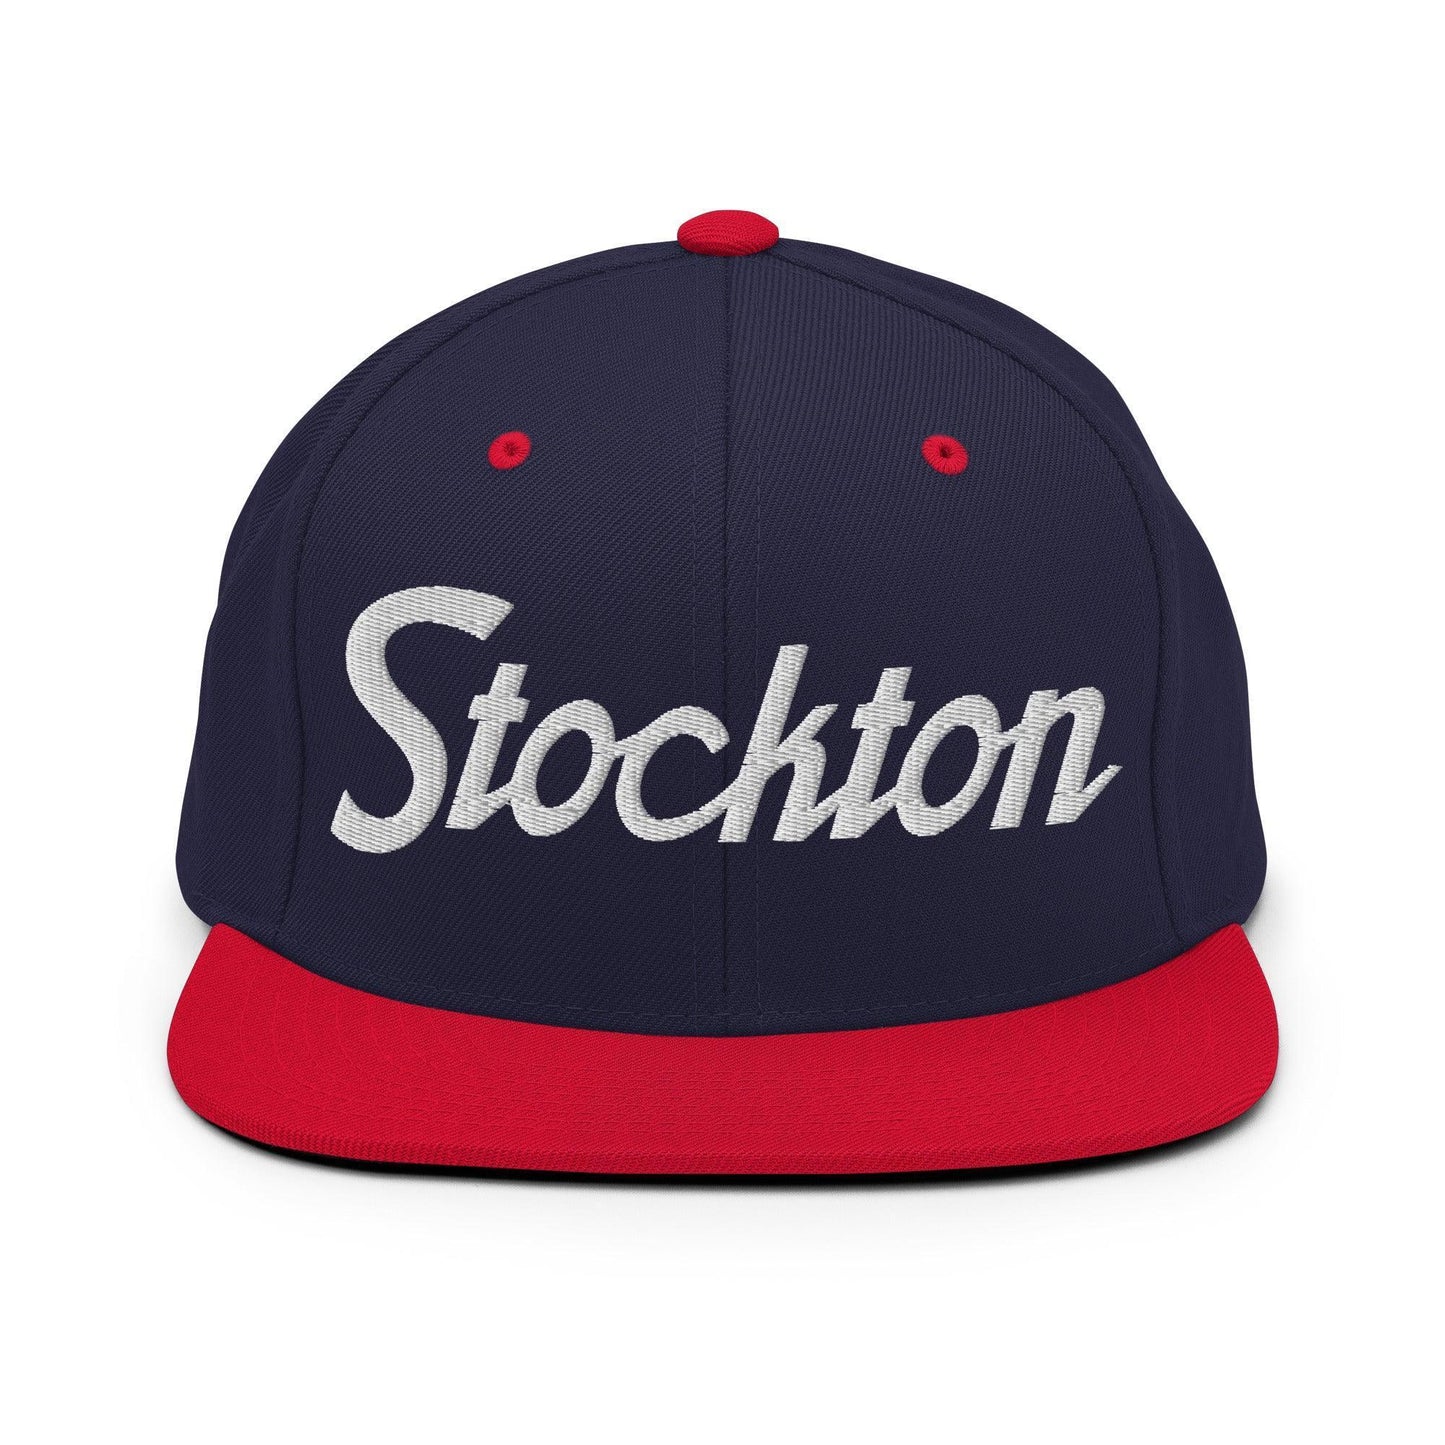 Stockton Script Snapback Hat Navy Red